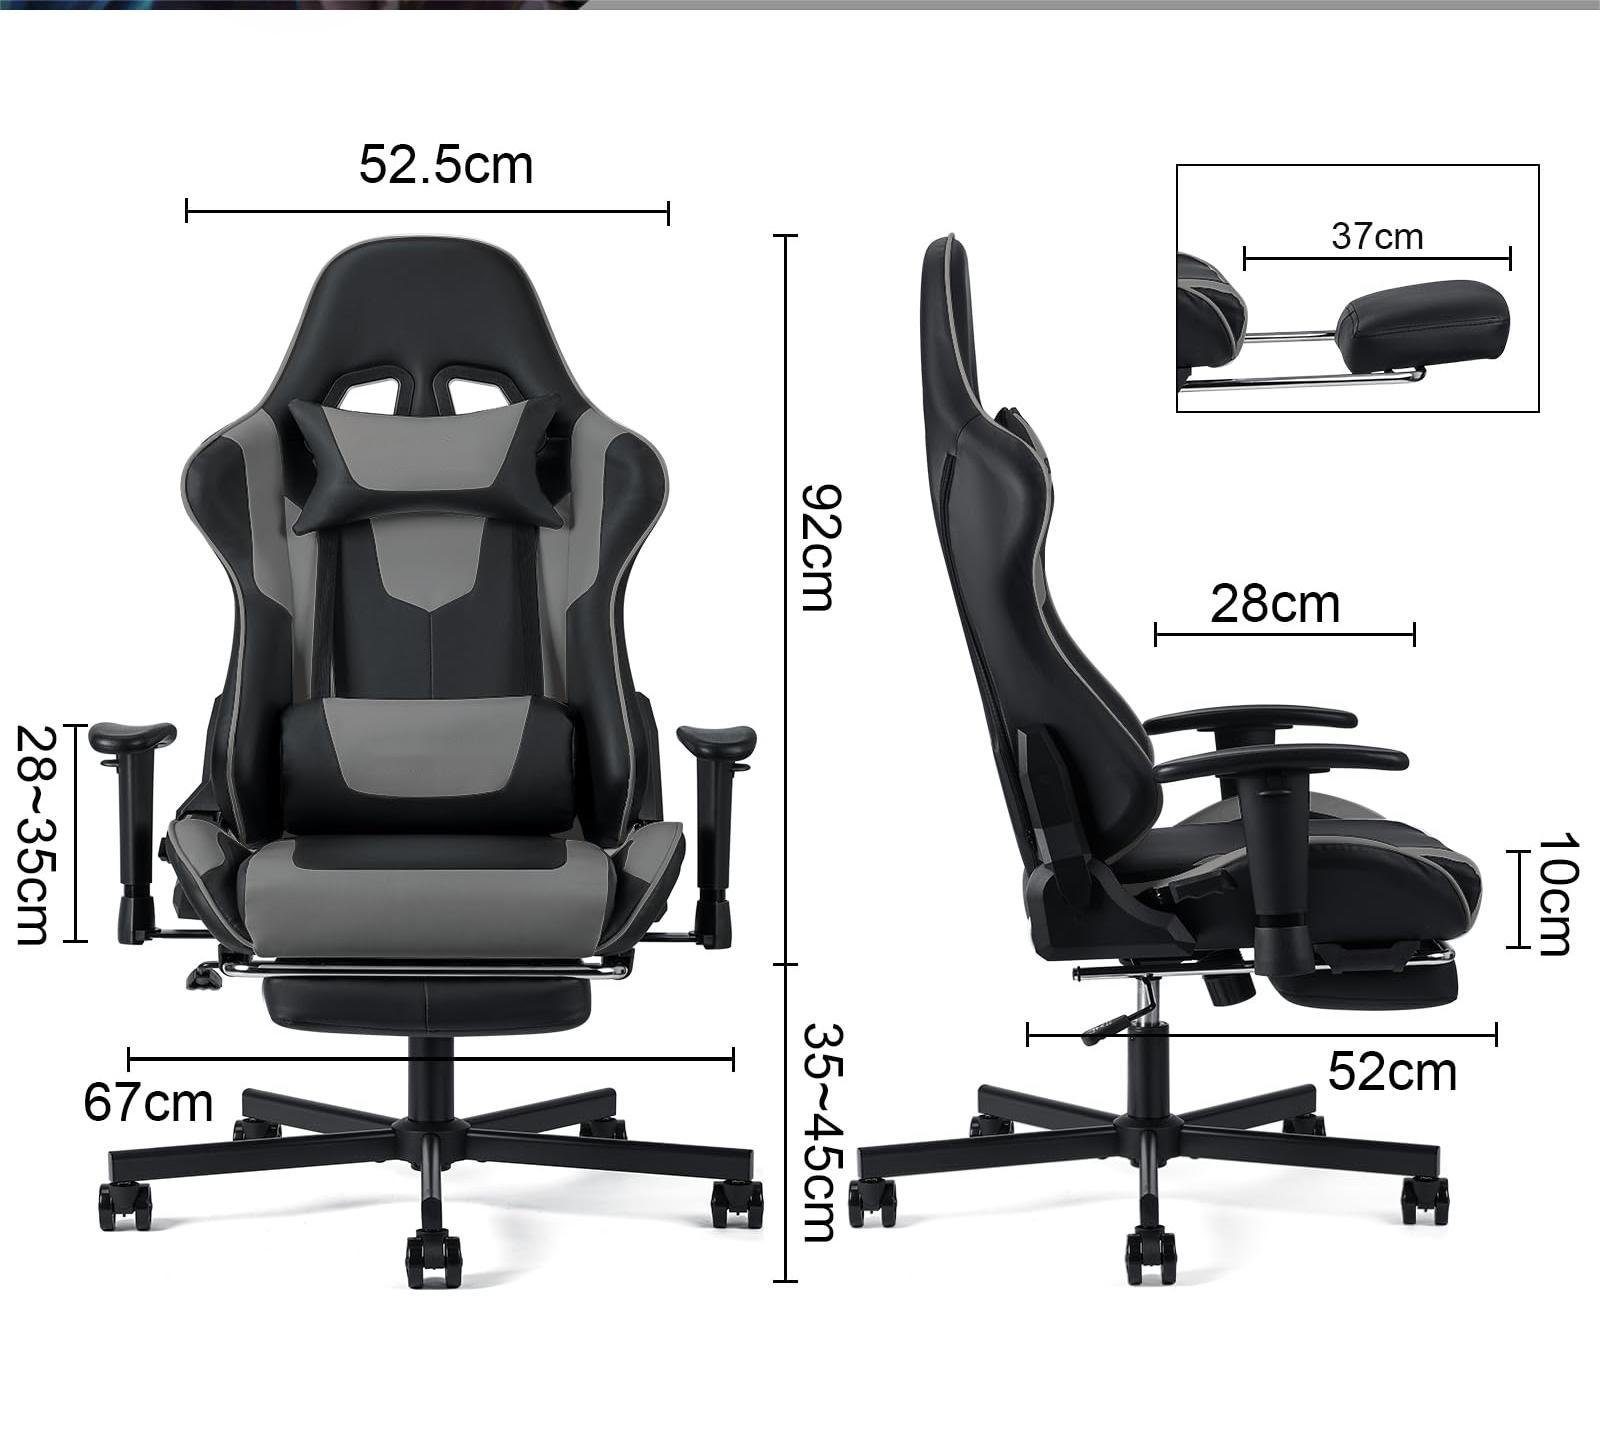 Bürostuhl verstellbaren ergonomische mit Gaming-Stuhl 90°-150° Kippfunktion, Armlehnen), Fußstütze, Rückenlehne Gaming-Stühle Nackenkissen, Fangqi (3D-Armlehnen, verstellbar, Lendenkissen Gamer-Rennstuhl mit